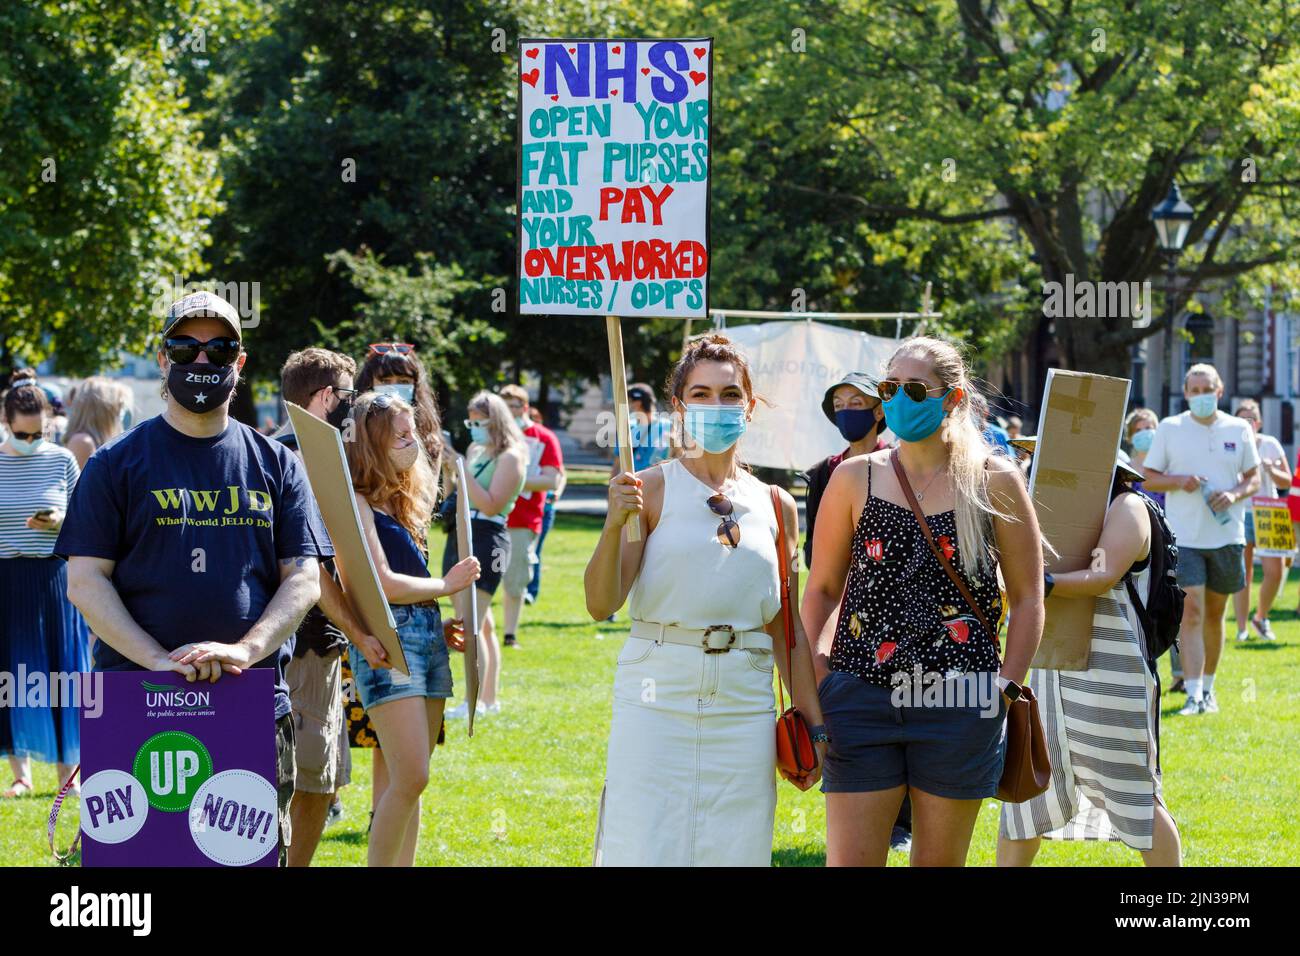 Plakat mit Protestierenden sind abgebildet, während sie an einer Demonstration und protestmarsch der NHS-Arbeiter ‘Pay Justice’ in Bristol, 8th. August 2020, teilnehmen Stockfoto